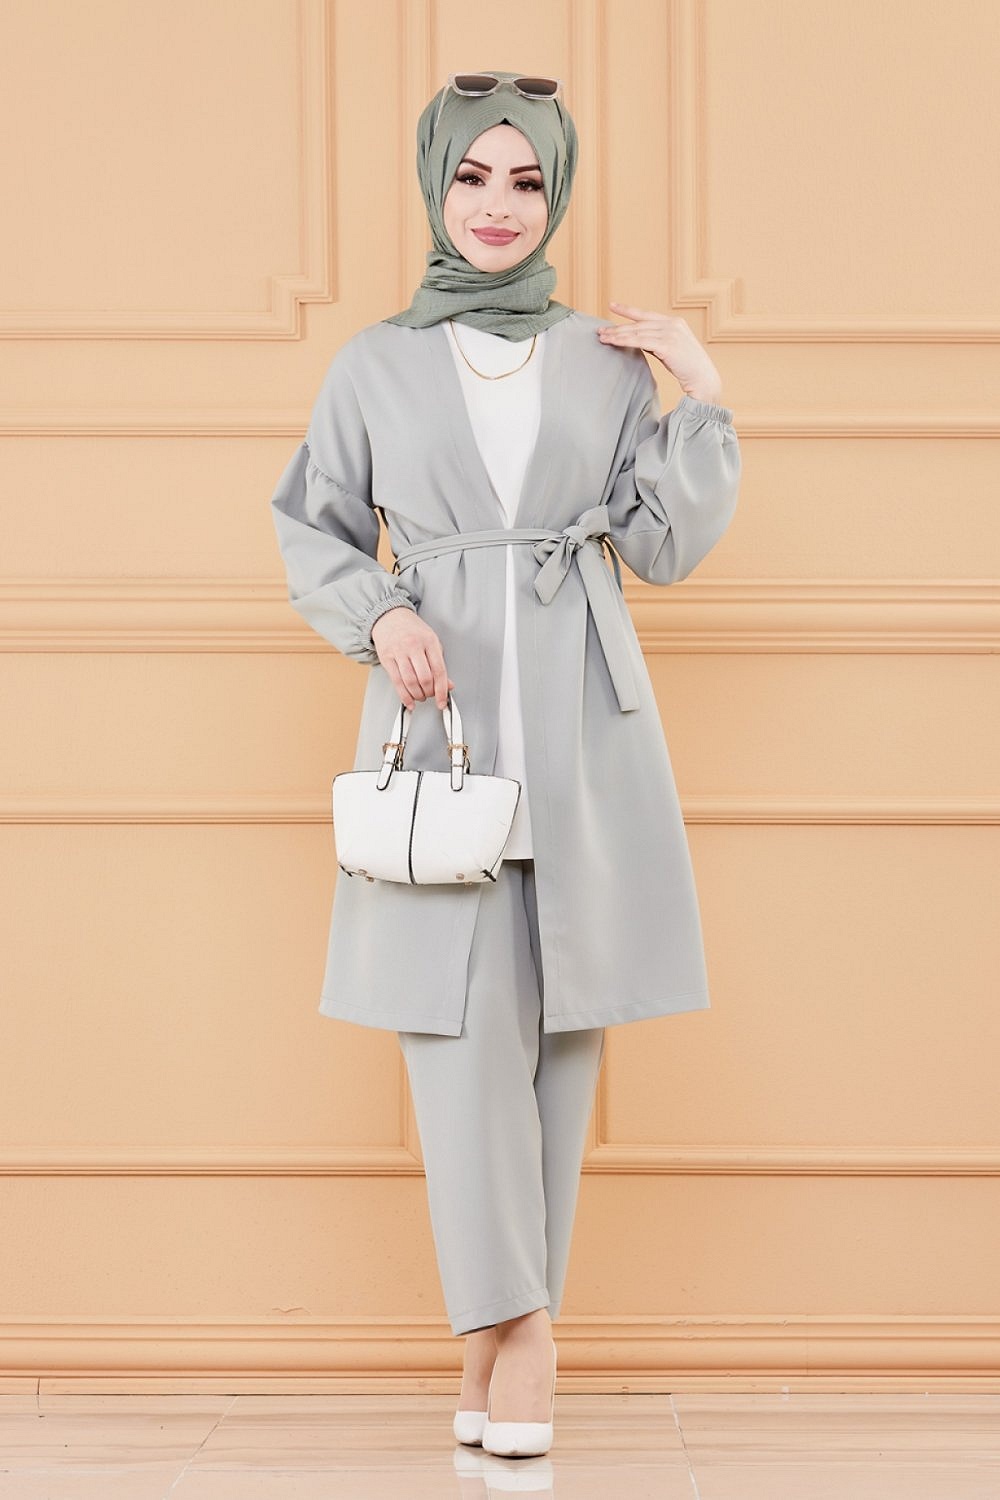 Robe de soirée pour femme (Tenue style chic pour hijab) - Couleur noir -  Prêt à porter et accessoires